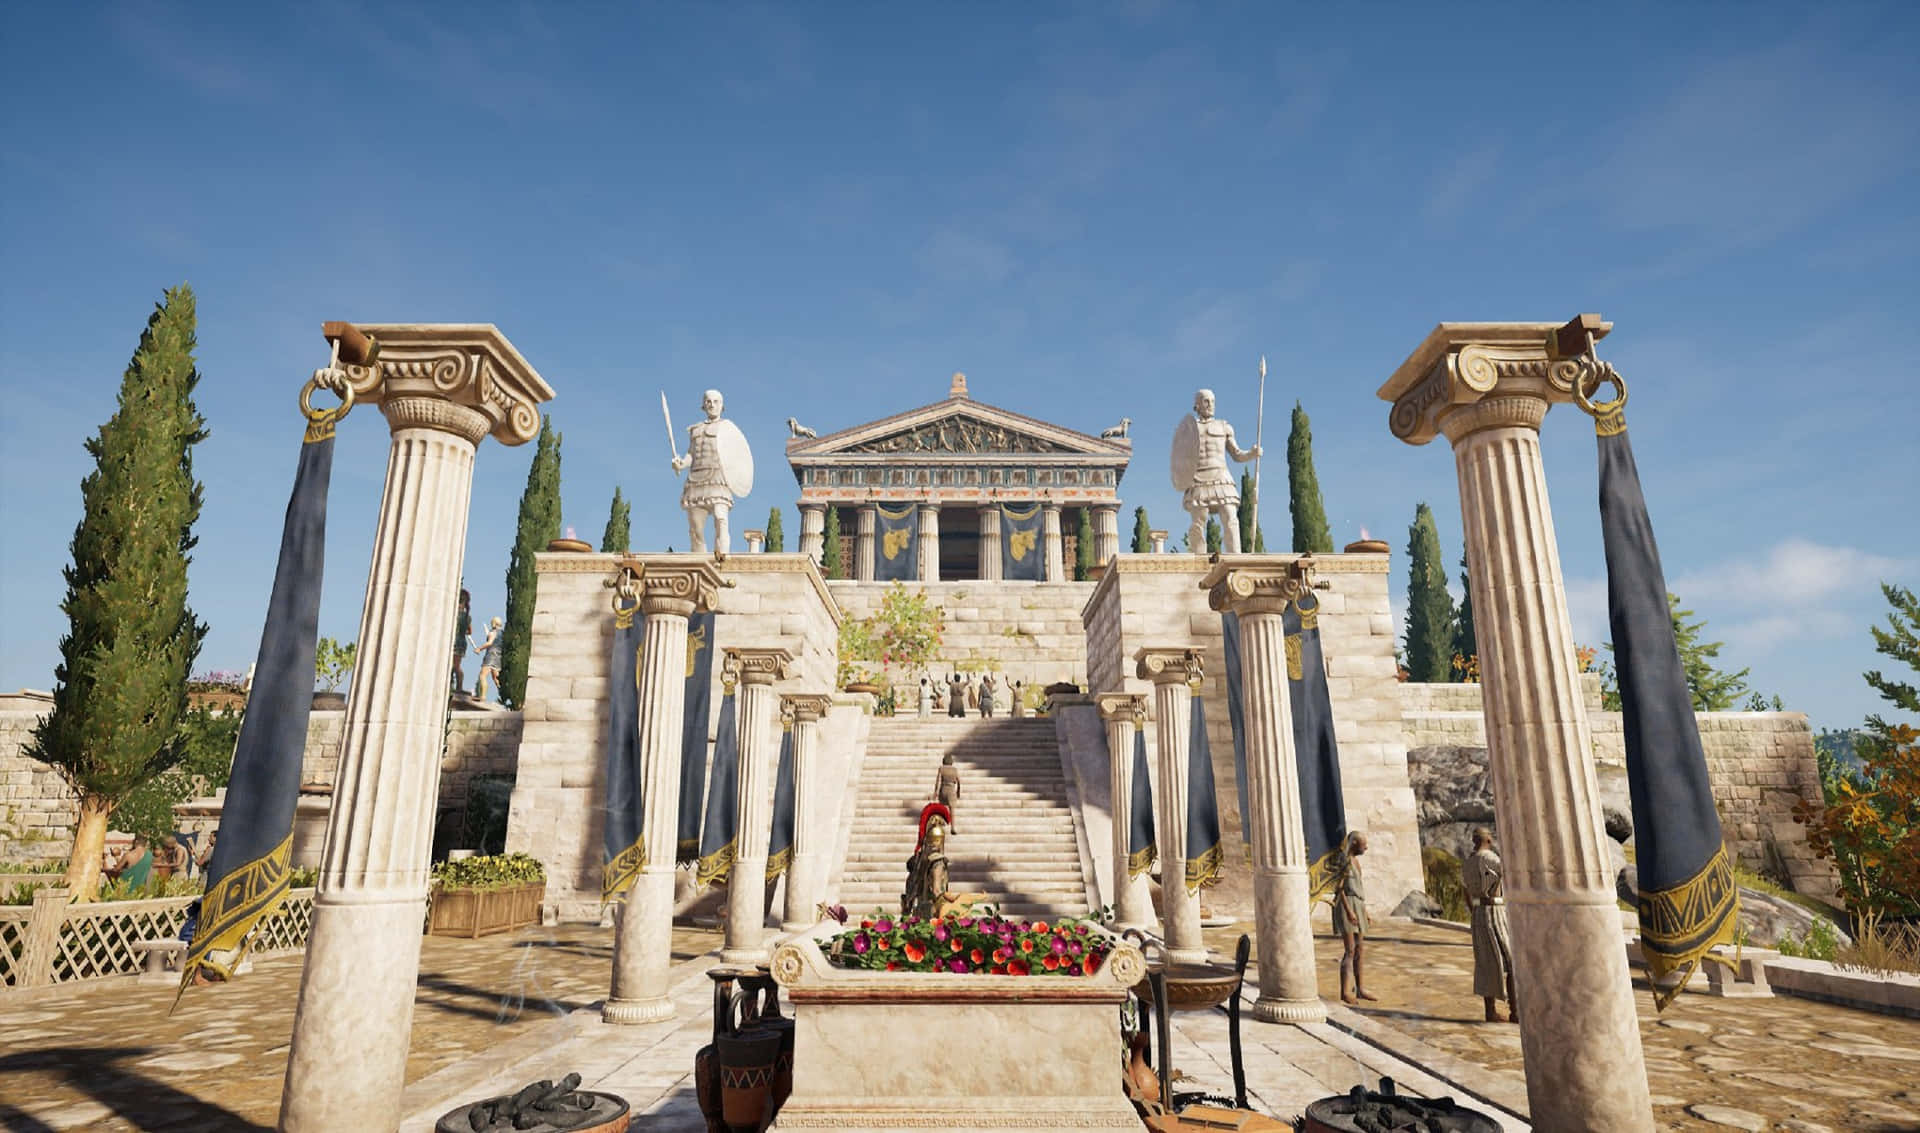 2440x1440bakgrundsbild För Assassin's Creed Odyssey Med Kassandra I Poseidons Tempel.